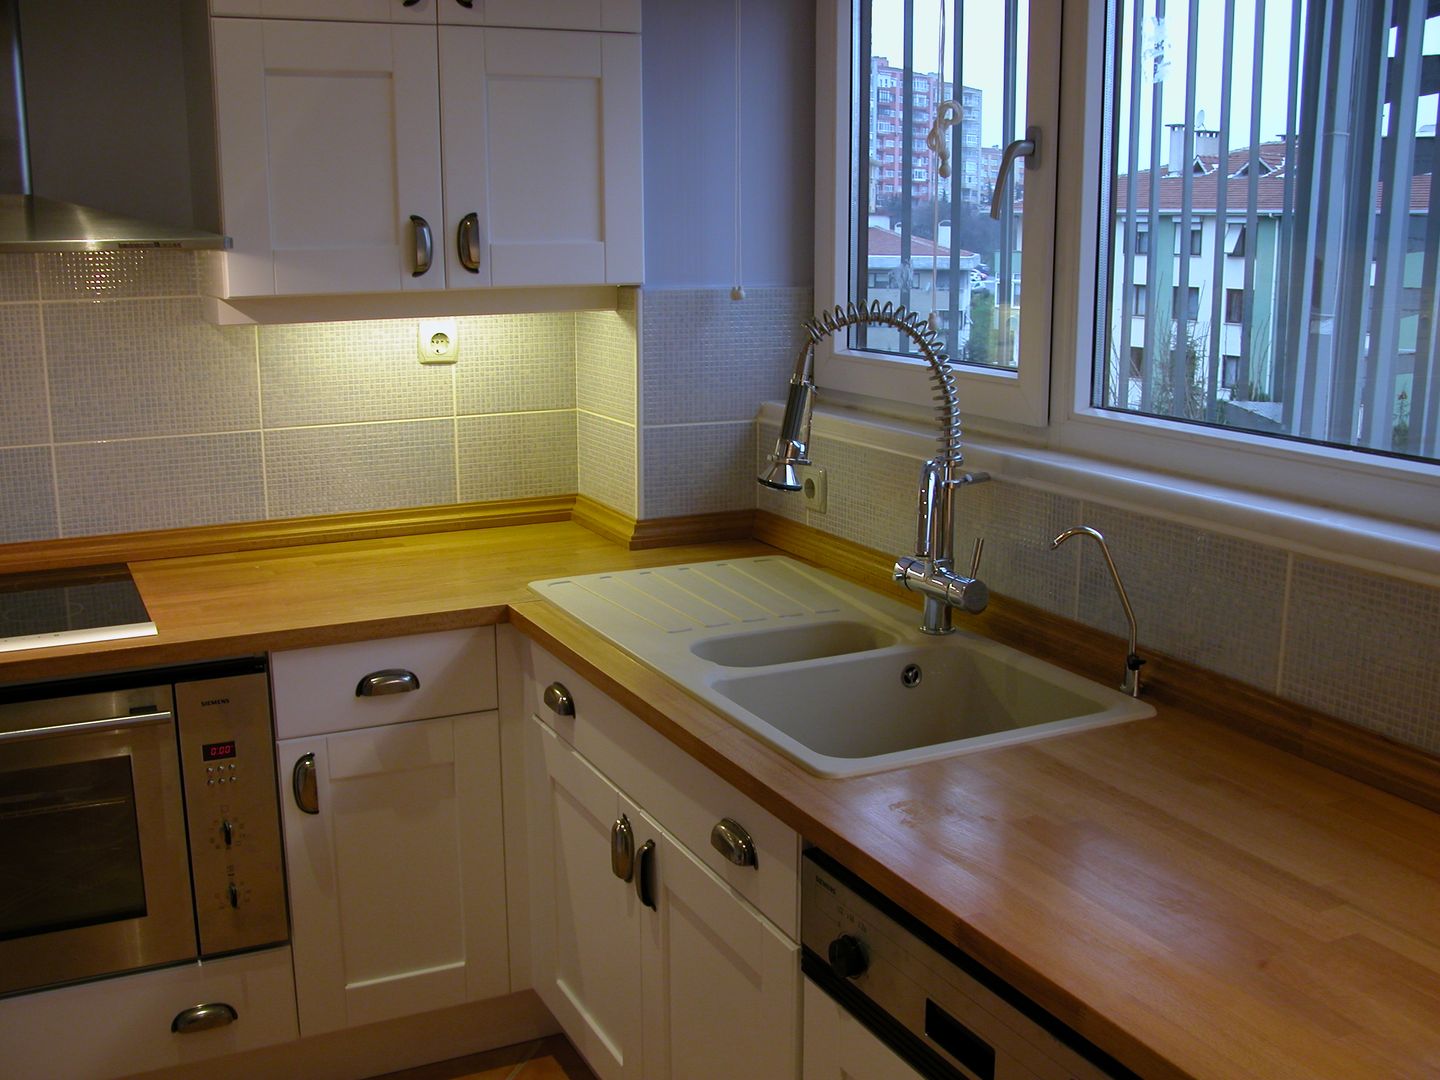 4.Levent Evi, İndeko İç Mimari ve Tasarım İndeko İç Mimari ve Tasarım Classic style kitchen